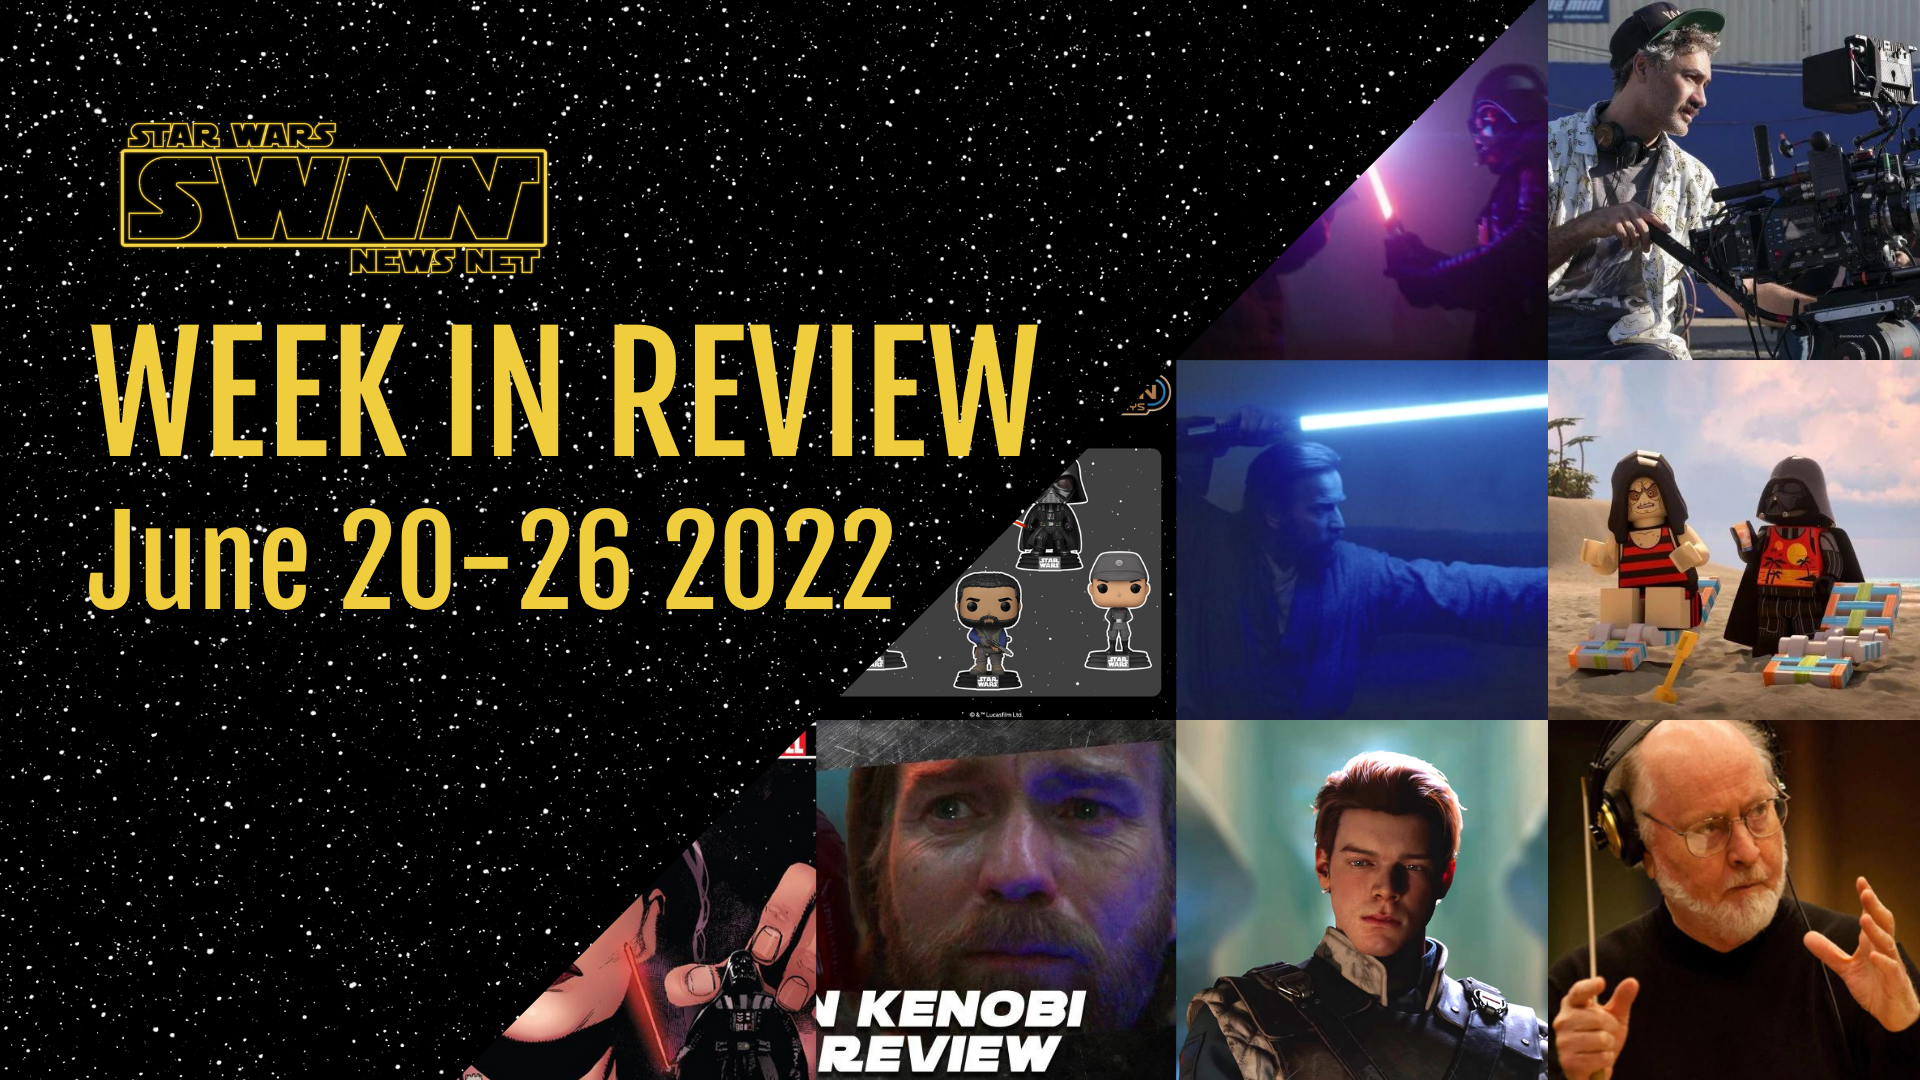 Week In Review &#8211; &#8216;Obi-Wan Kenobi&#8217; Finale Discussion, John Williams Retiring, Cal Kestis Rumors, and More